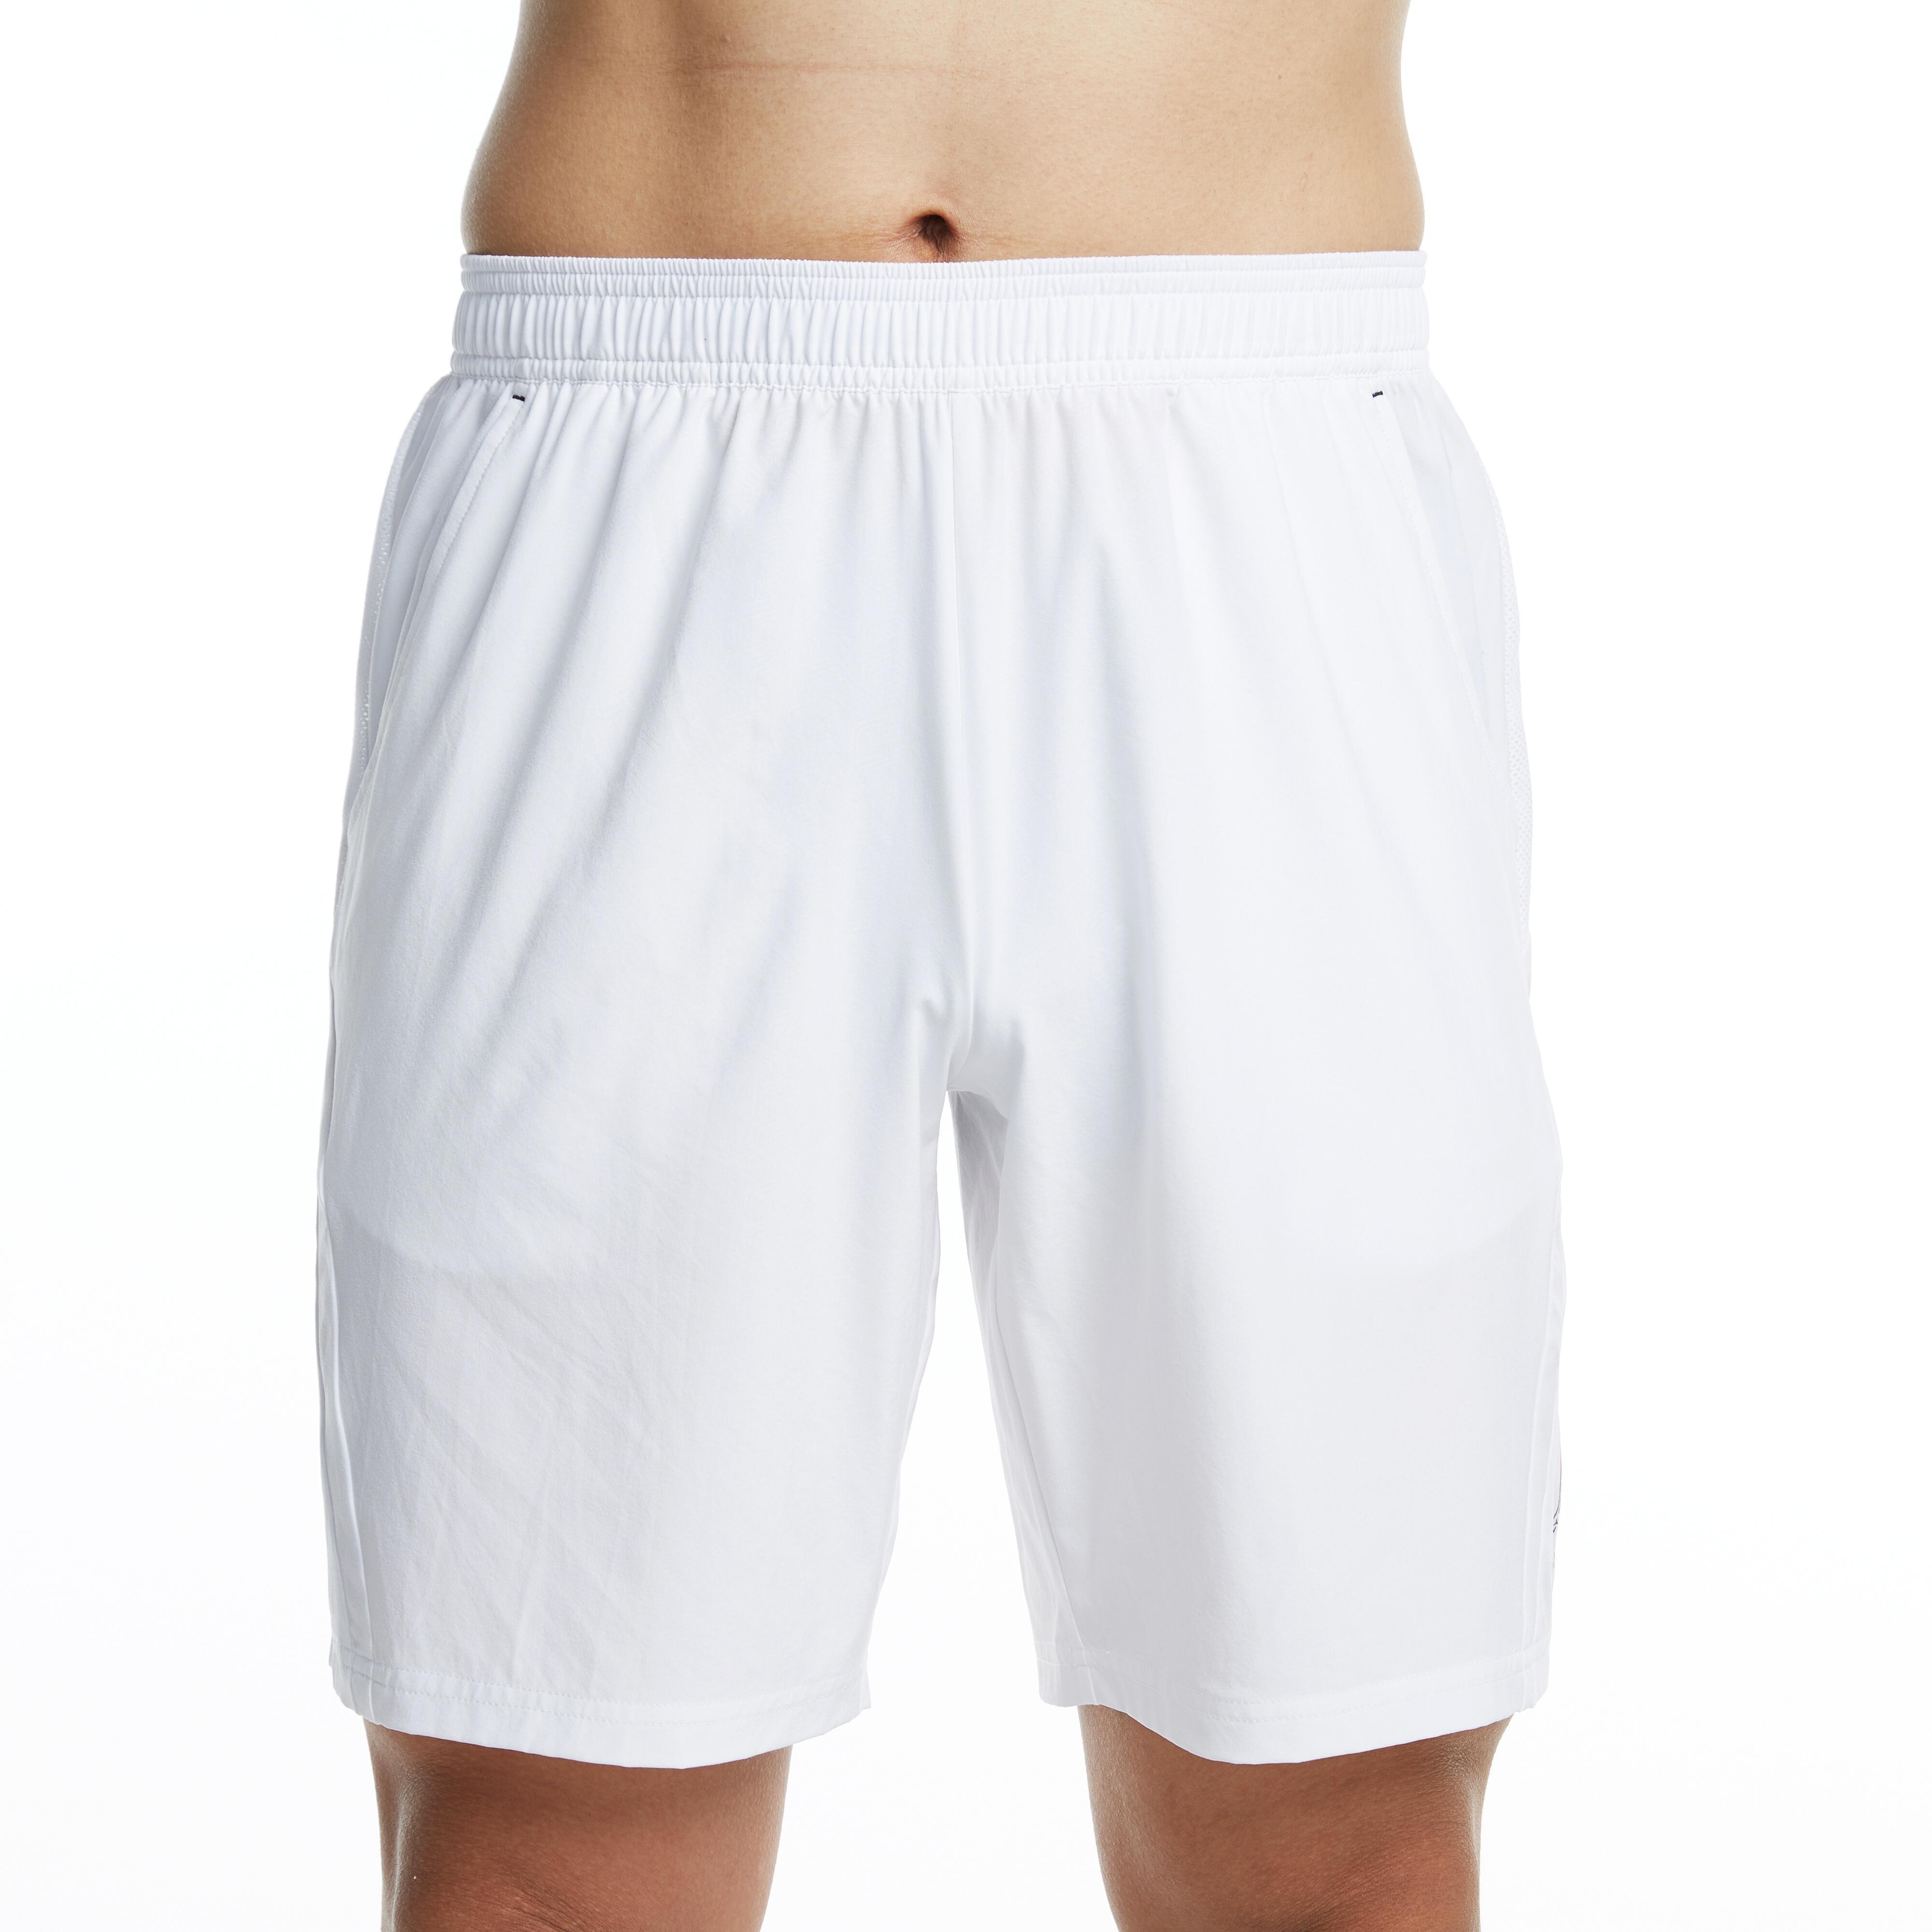 PERFLY  Shorts - 560 